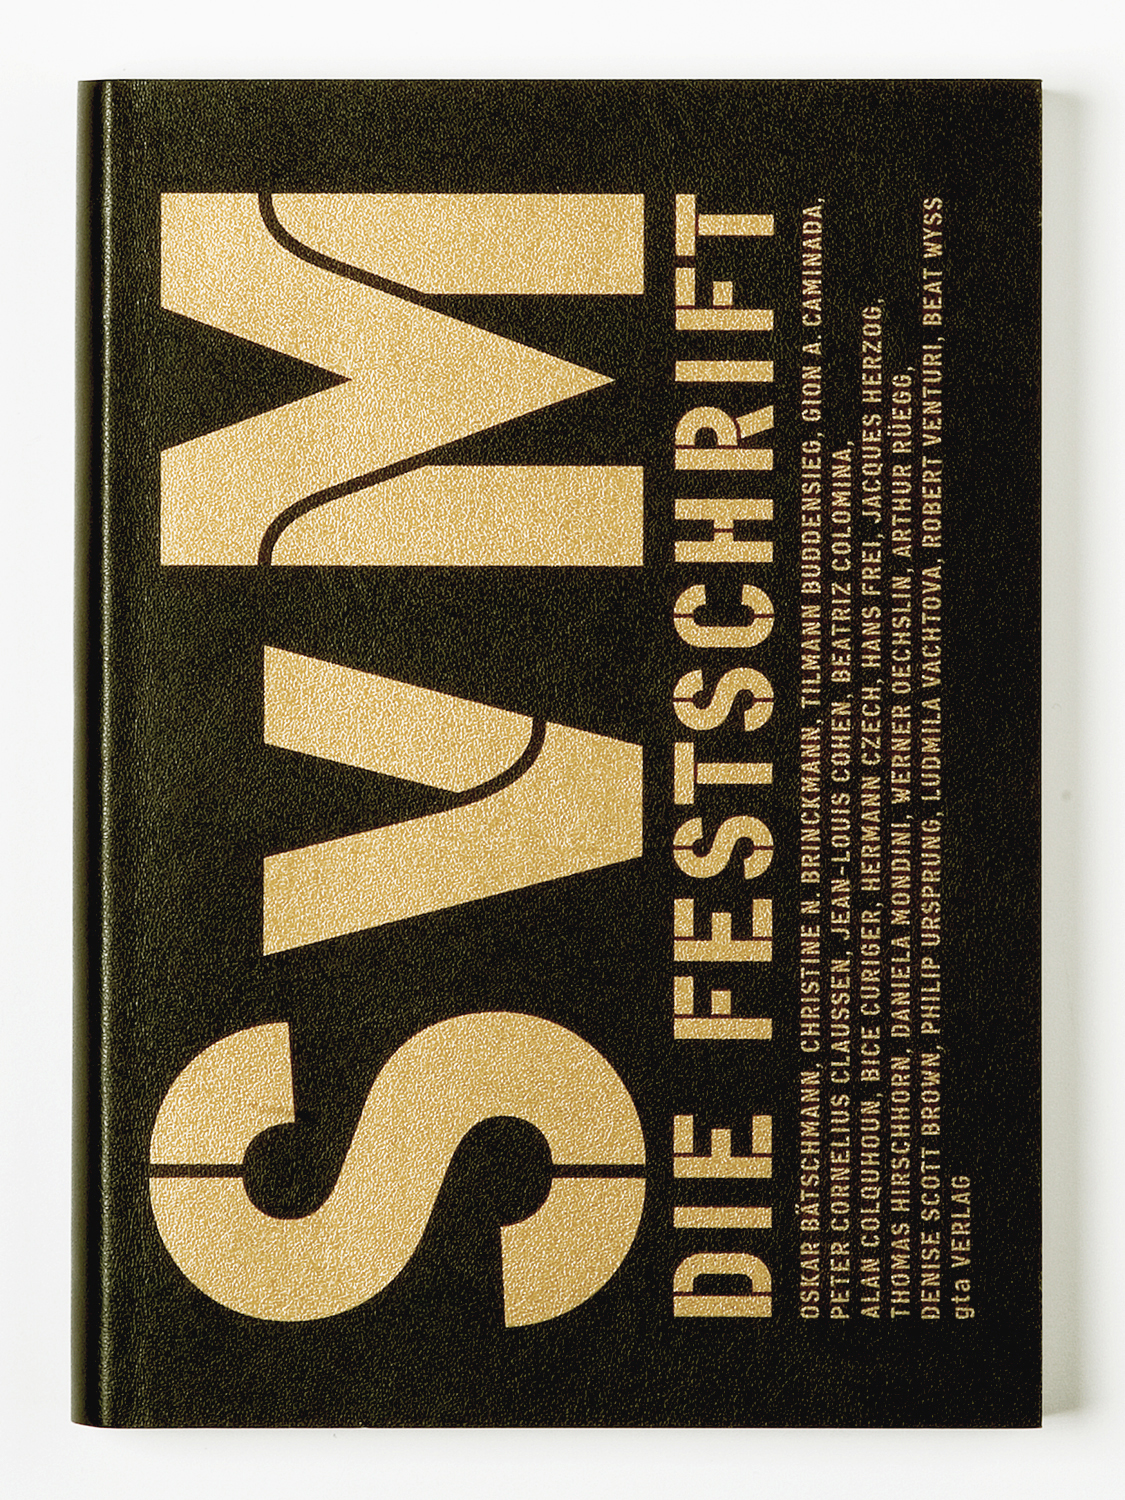 'SvM. Die Festschrift'